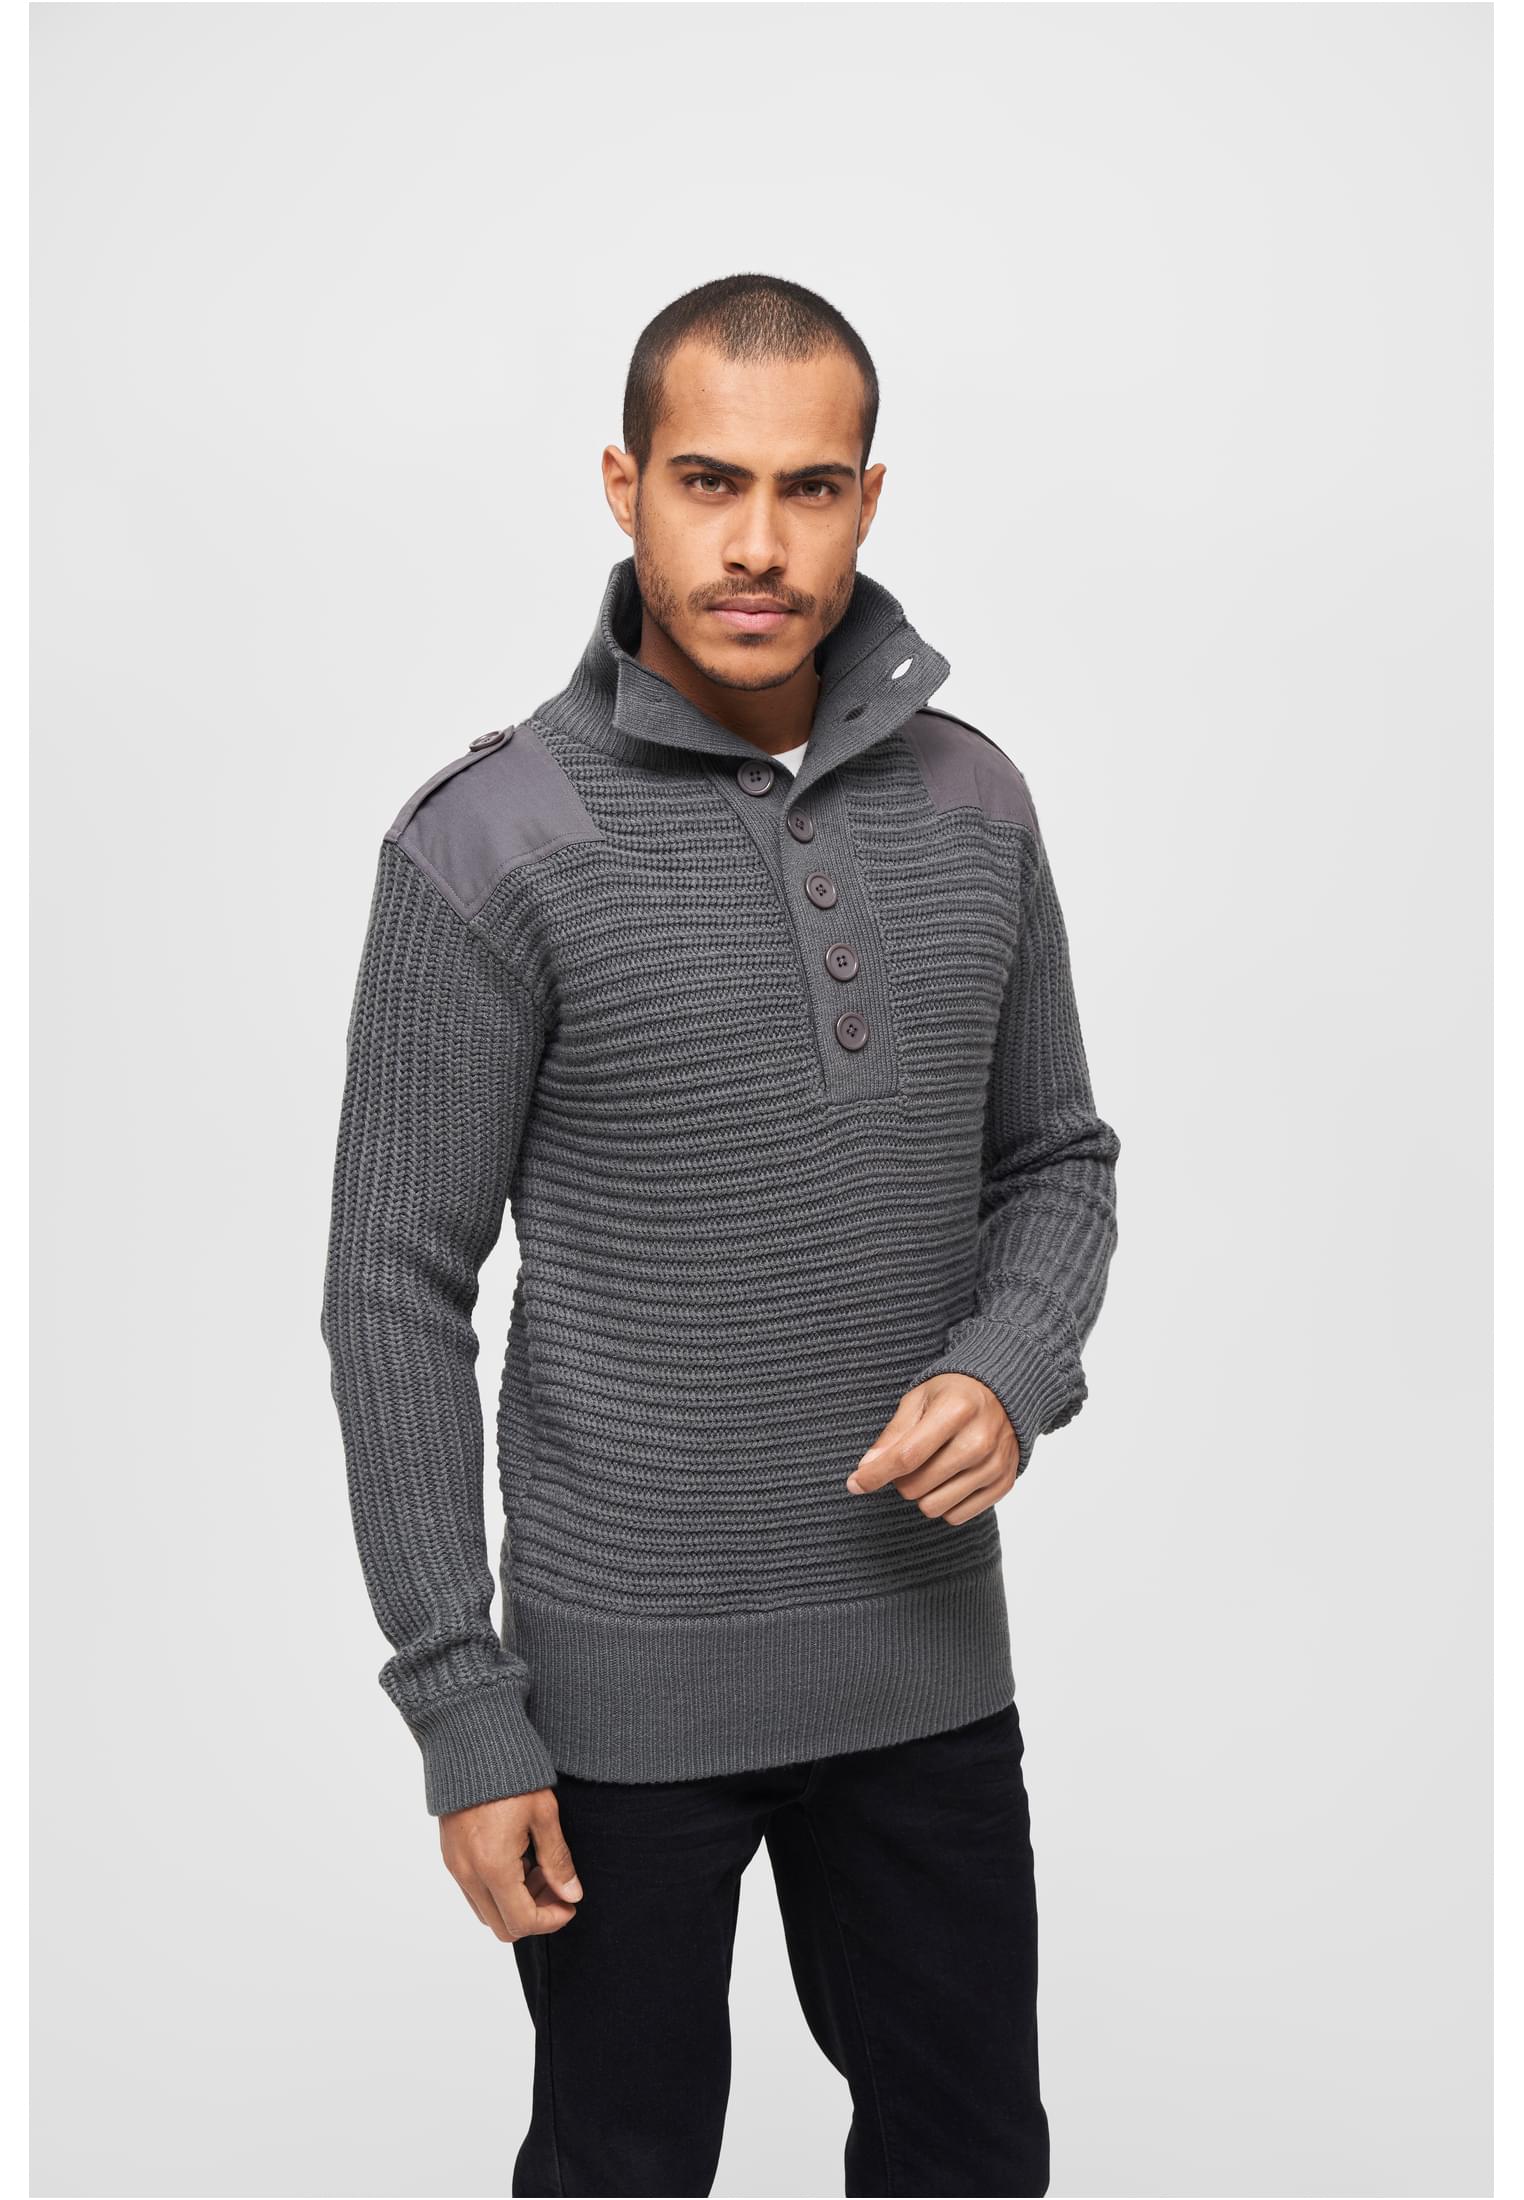 Pullover Alpin Pullover in Farbe anthracite